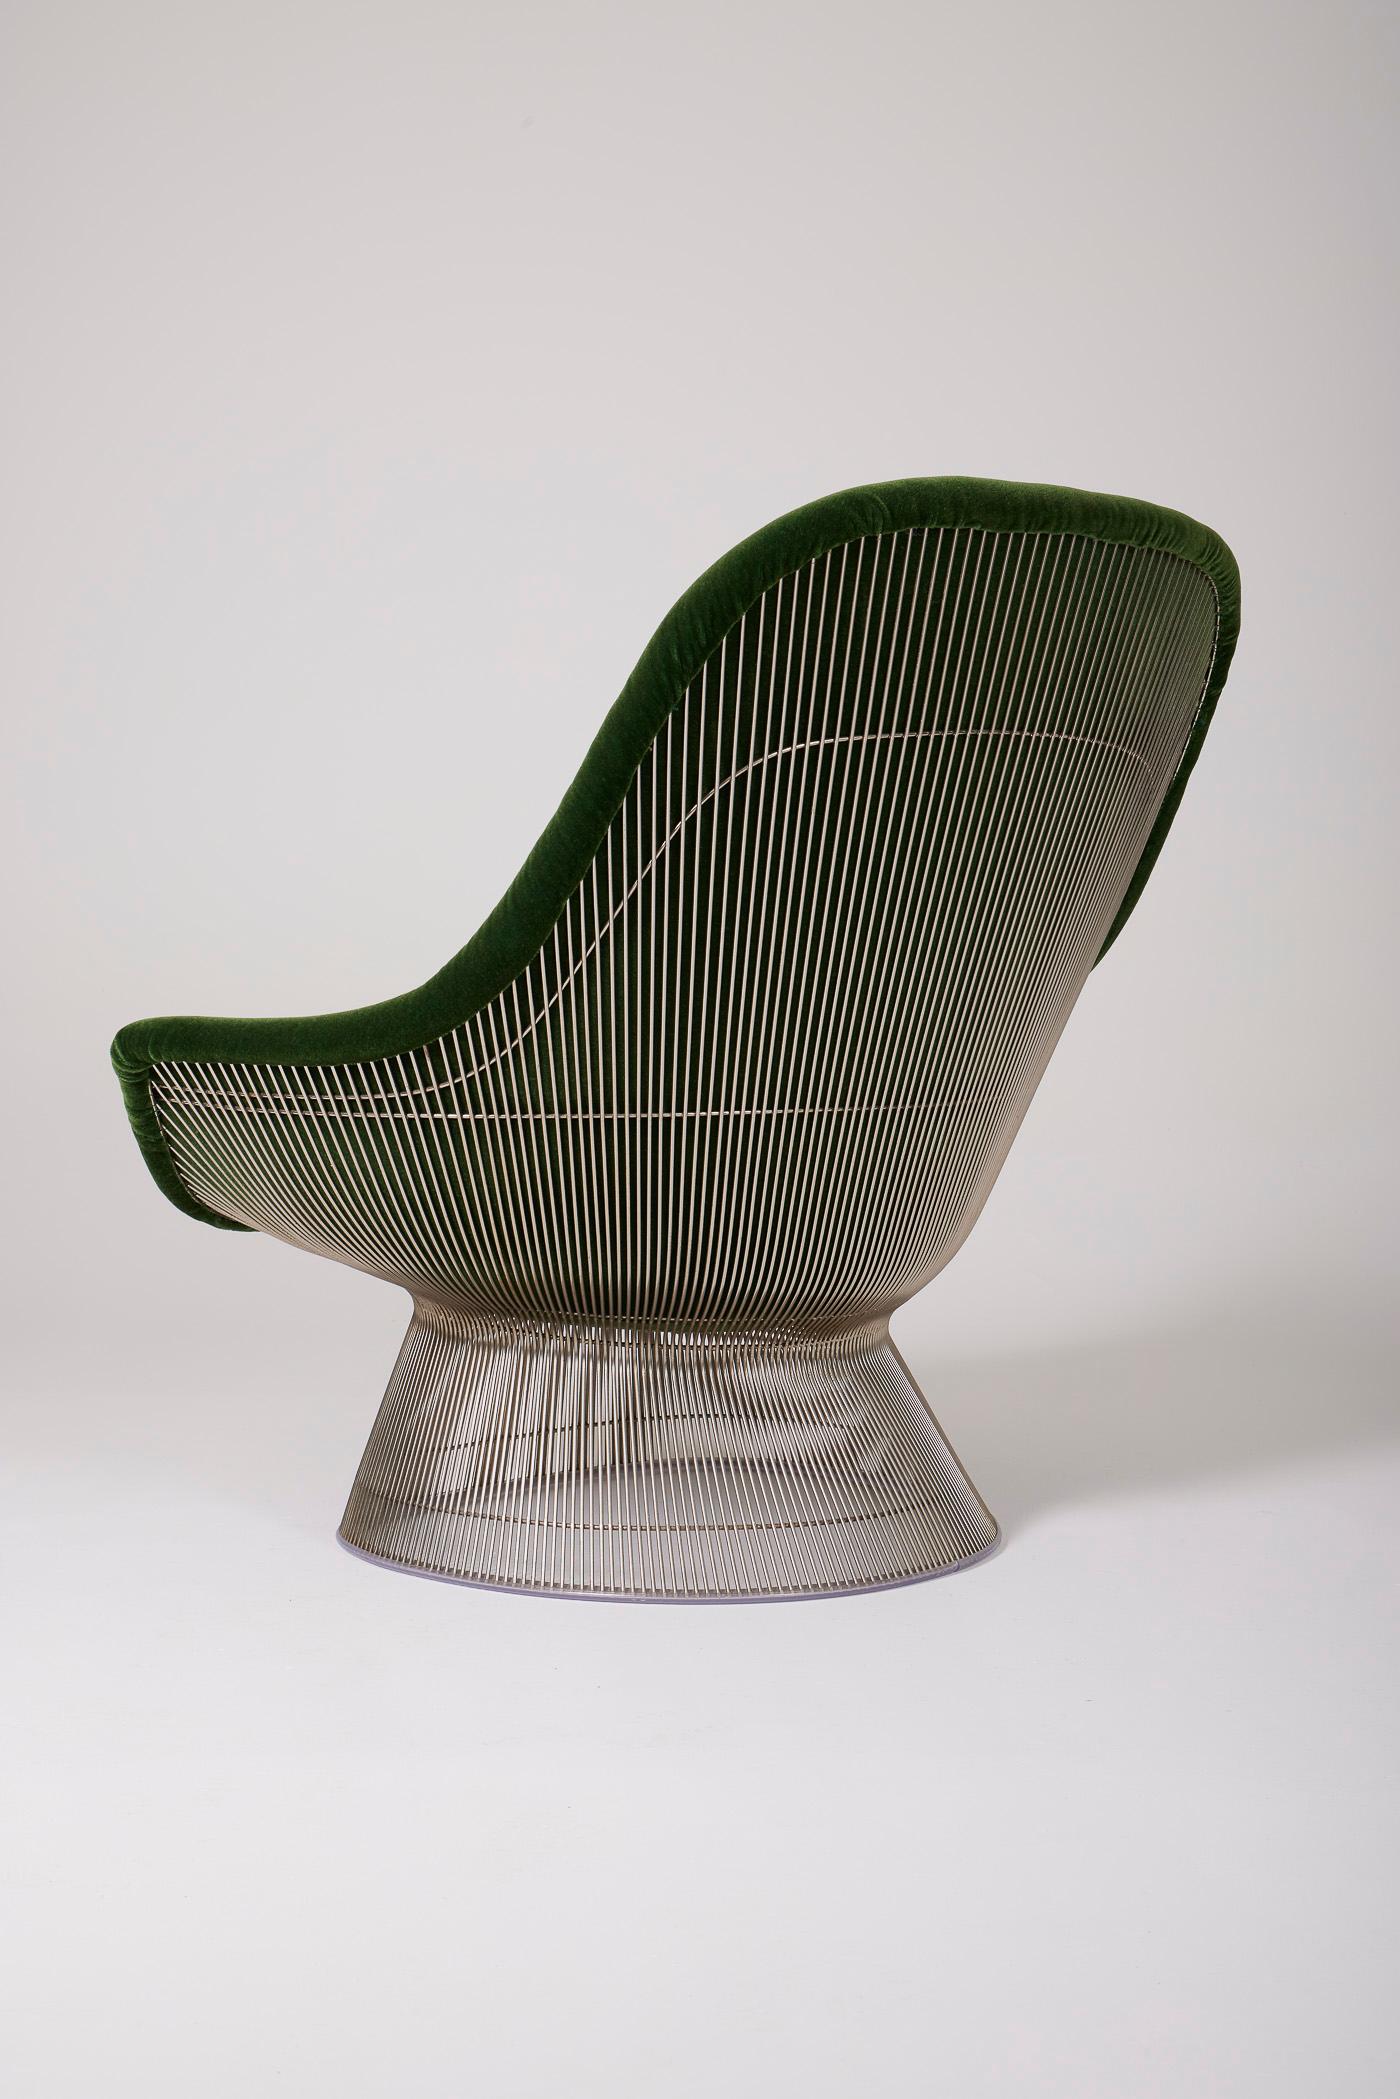 Warren Platner armchair For Sale 1